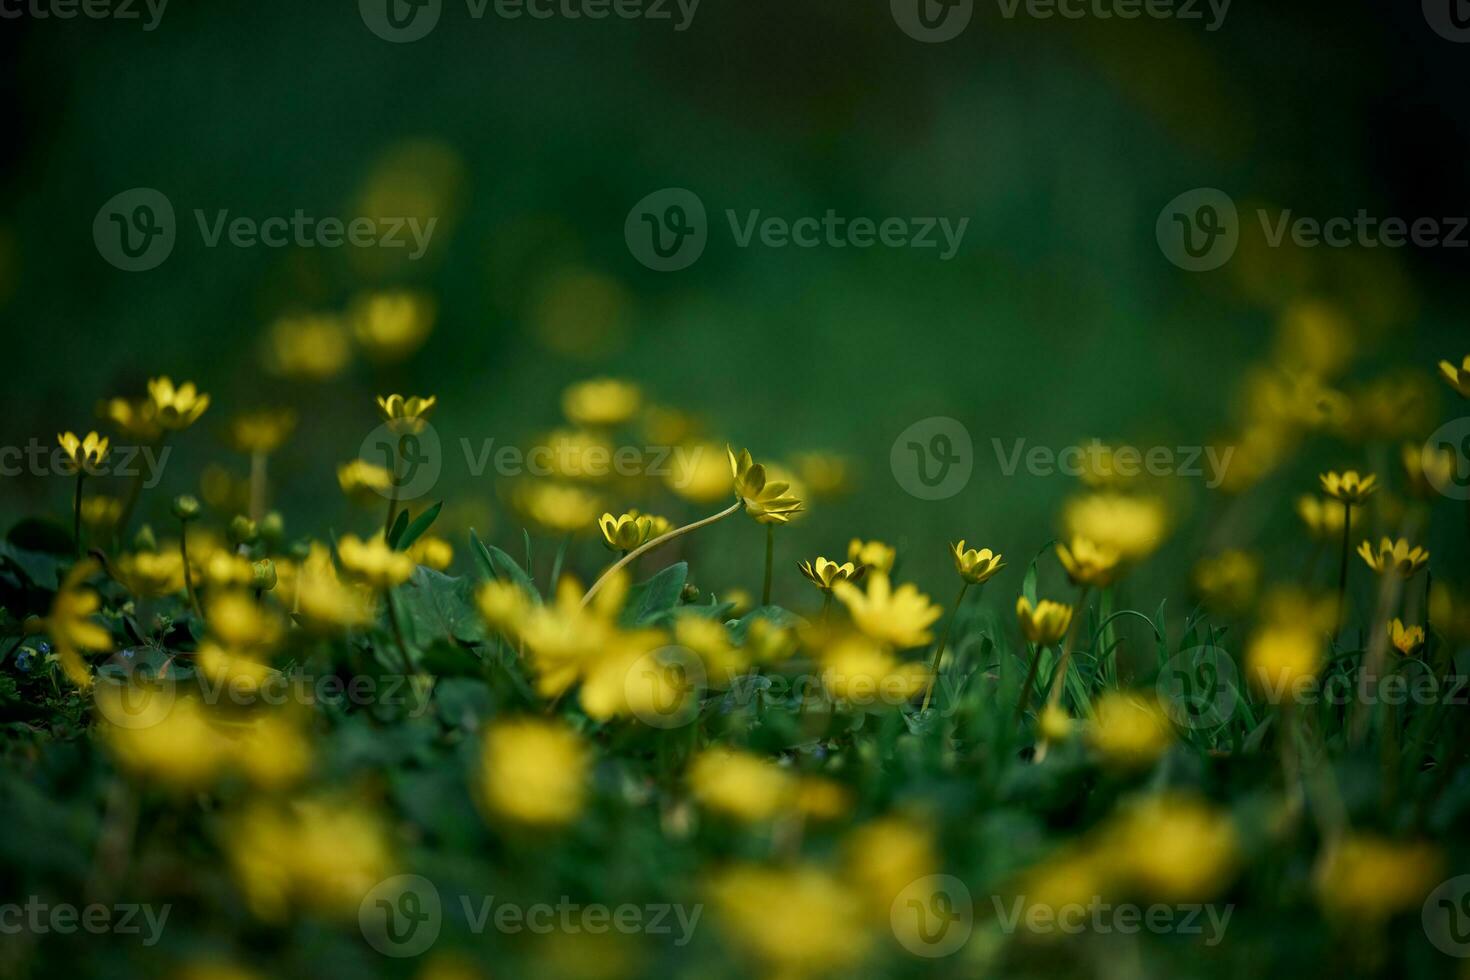 césped con verde césped y amarillo flores chistyak primavera o botón de oro primavera, macro foto